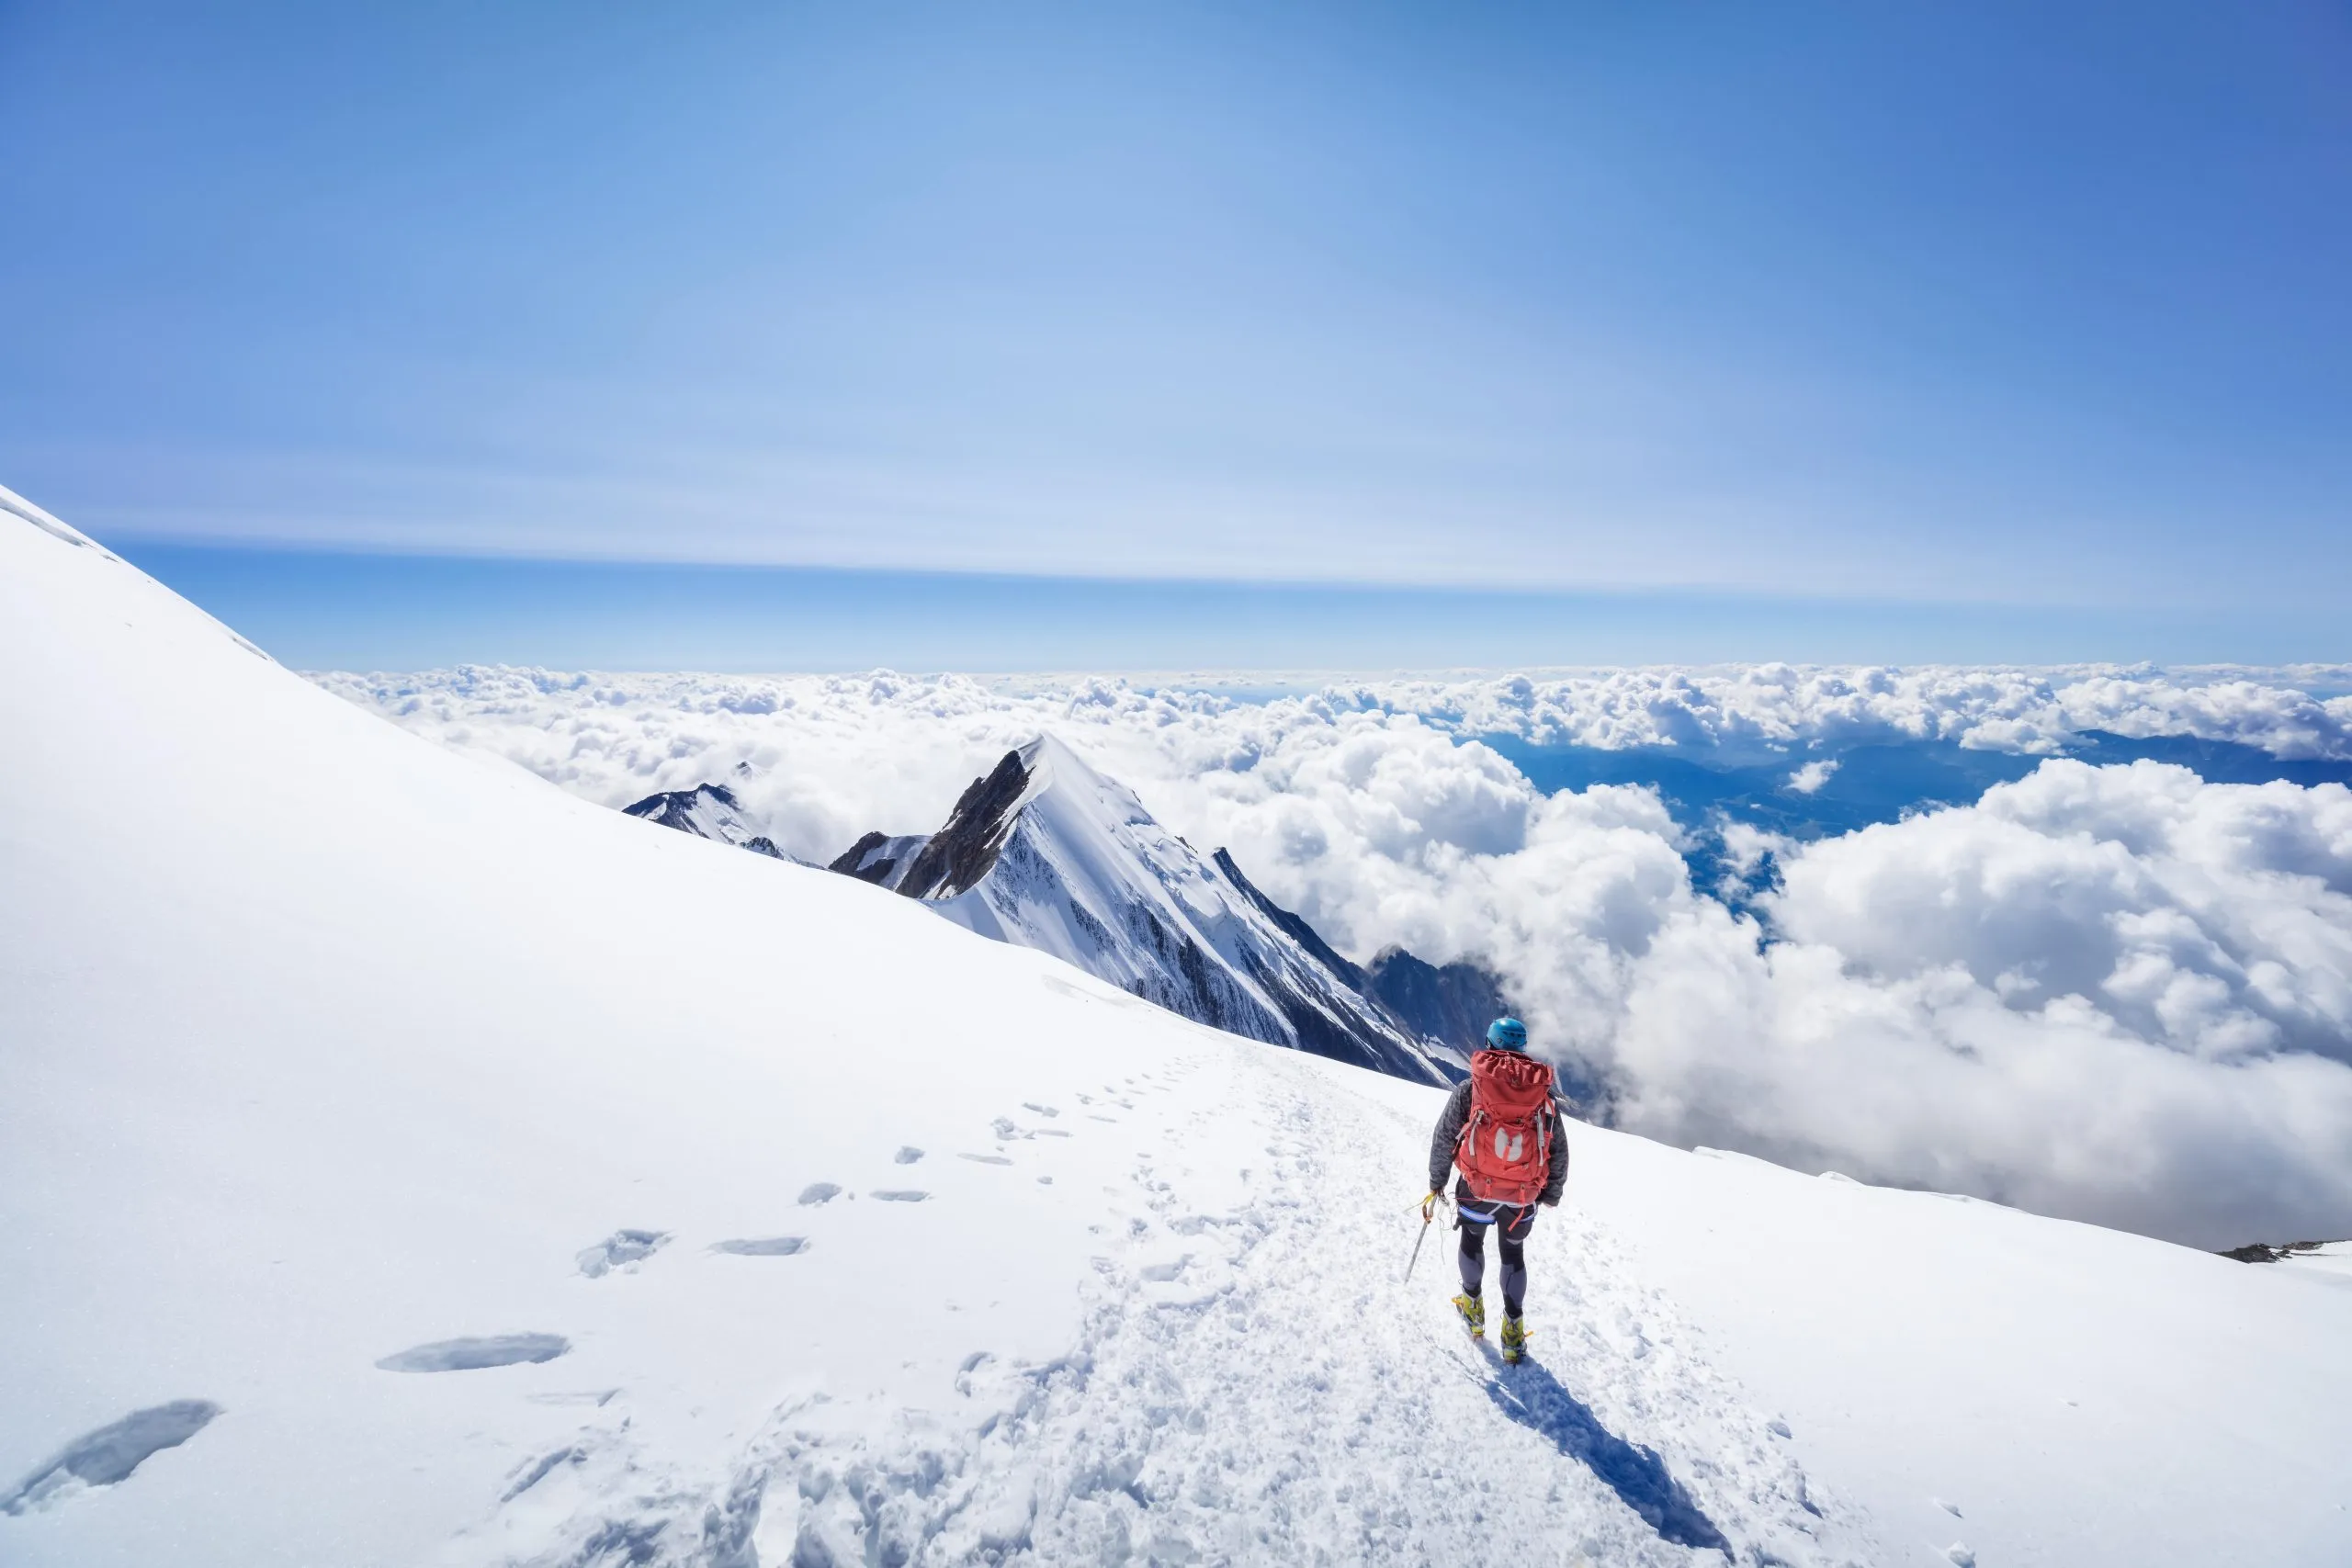 klimmer bewondert uitzicht vanaf mont blanc